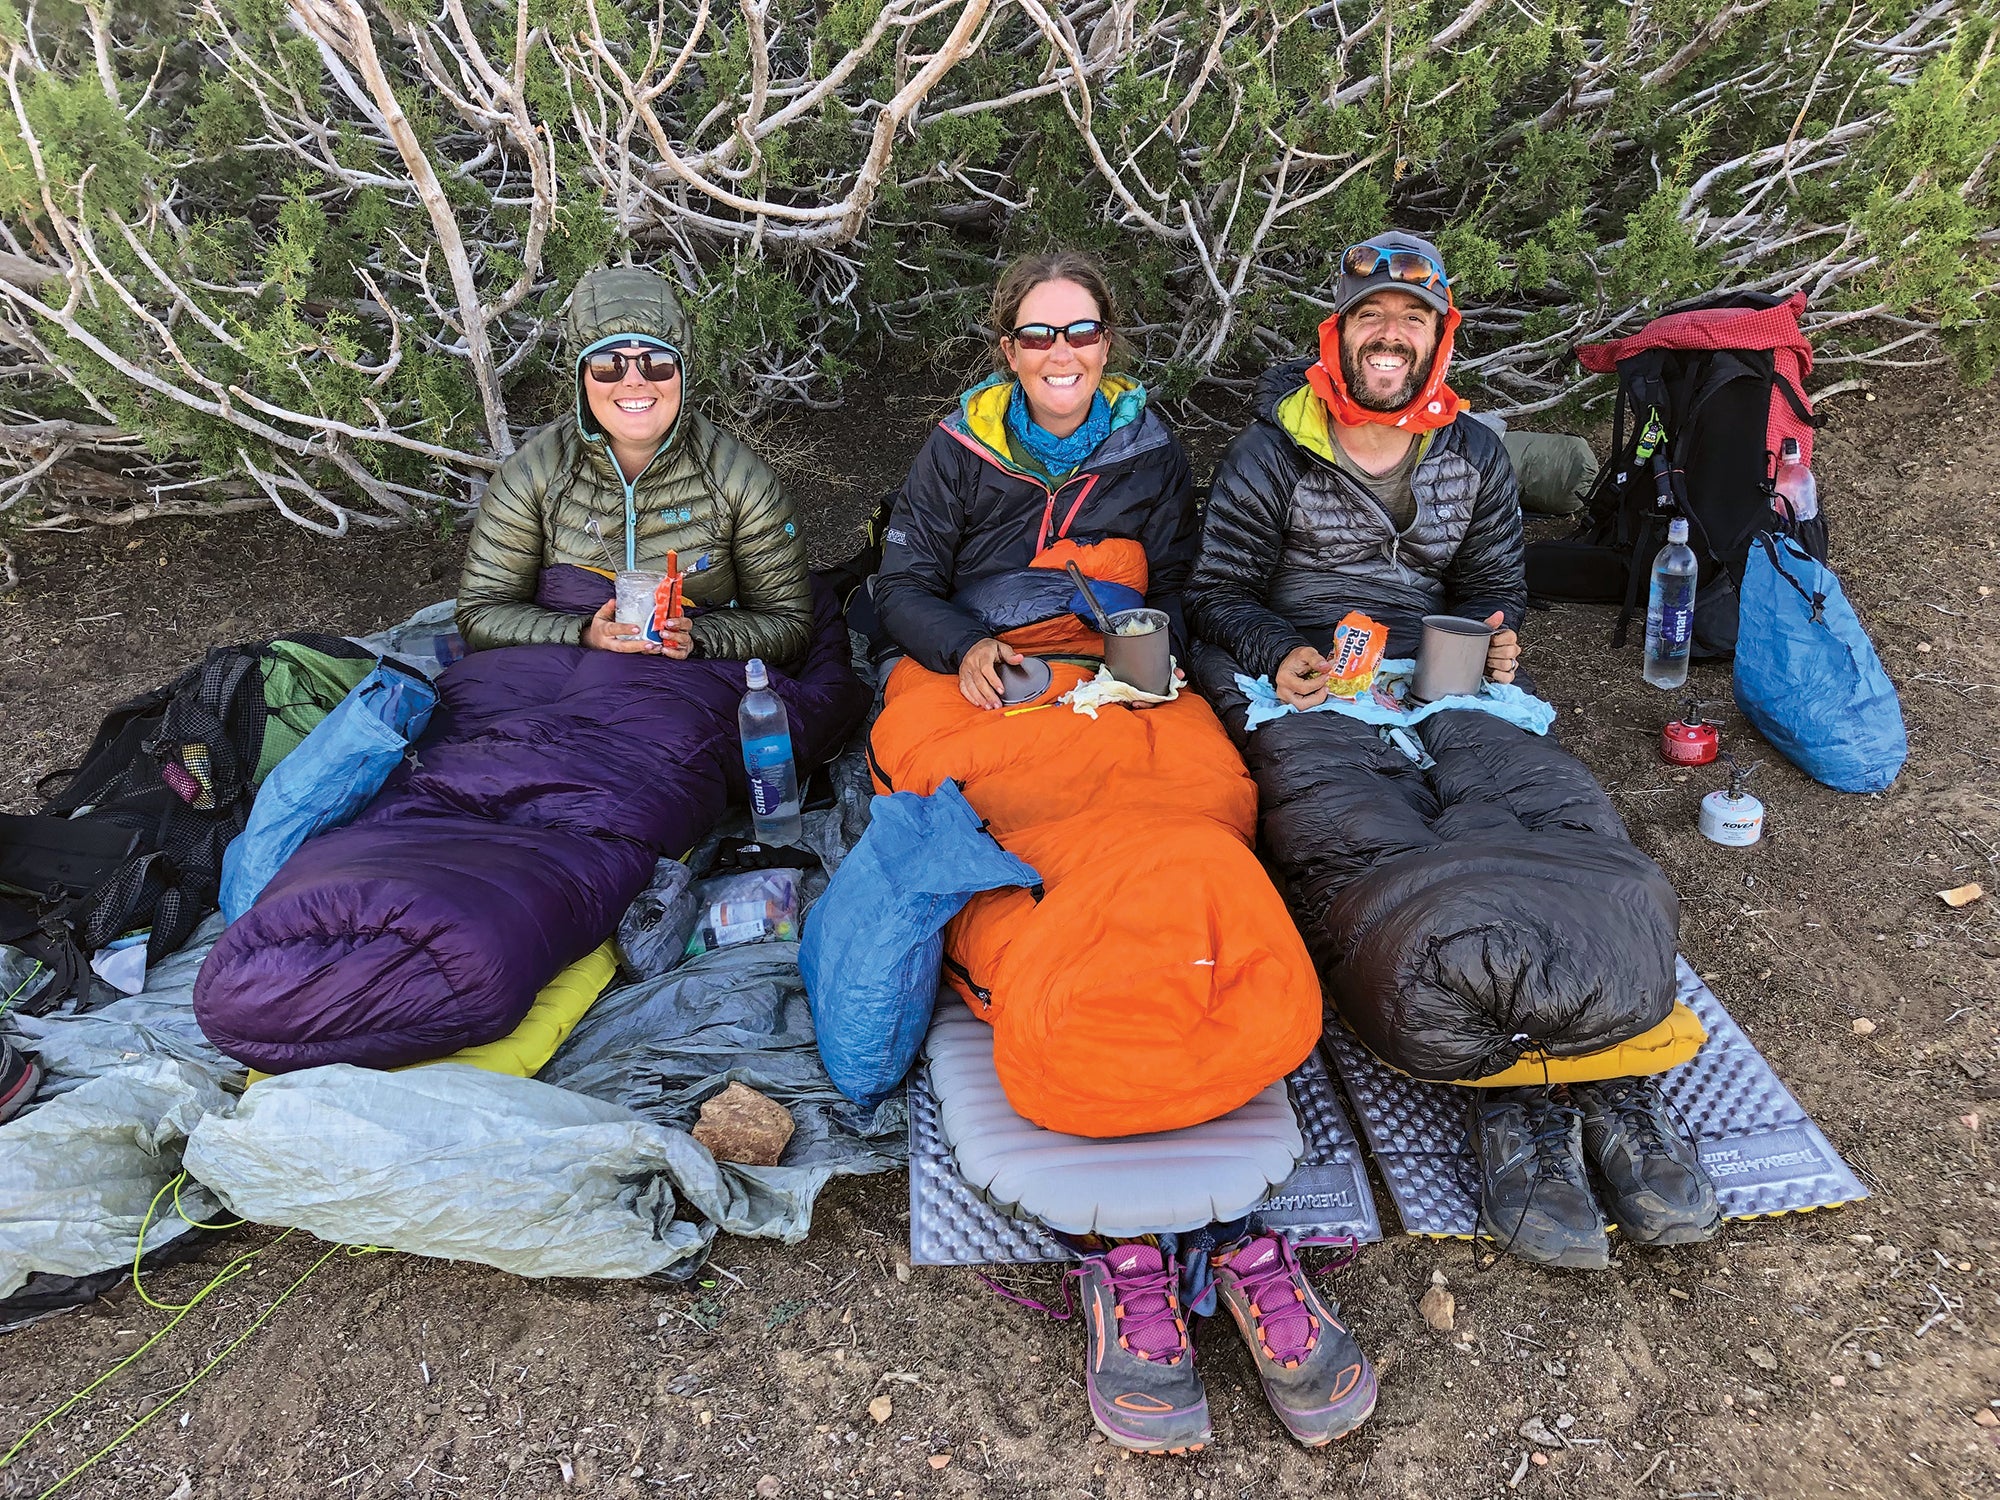 https://cdn.backpacker.com/wp-content/uploads/2019/04/sleeping-bag-cowboy-camping.jpg